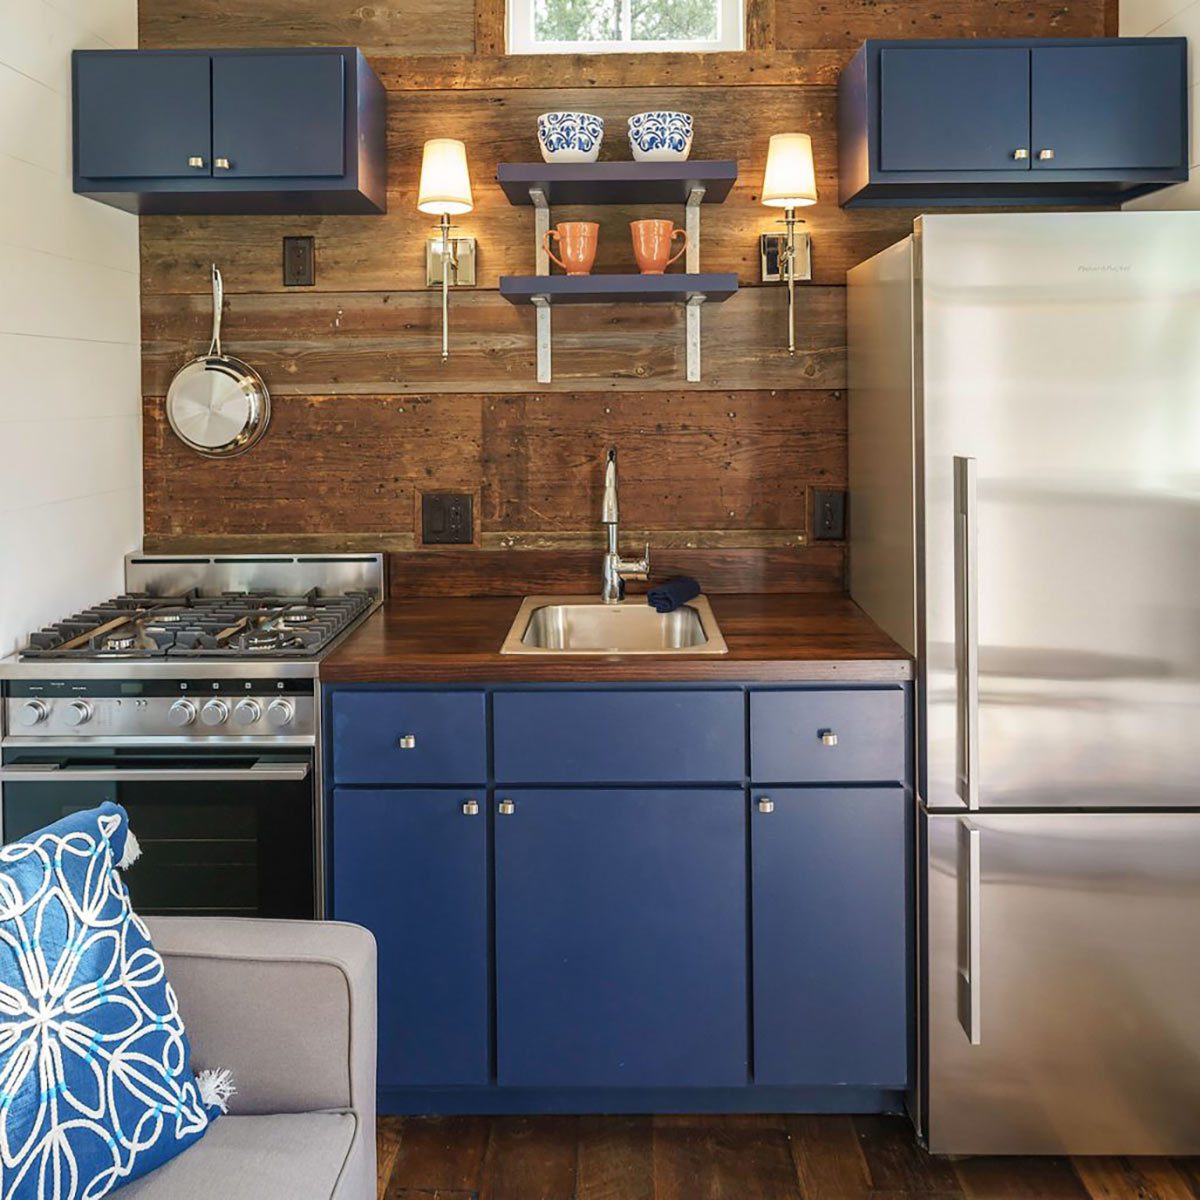 driftwood-homes-usa-kitchen-1200x1200 tiny home kitchen resale value